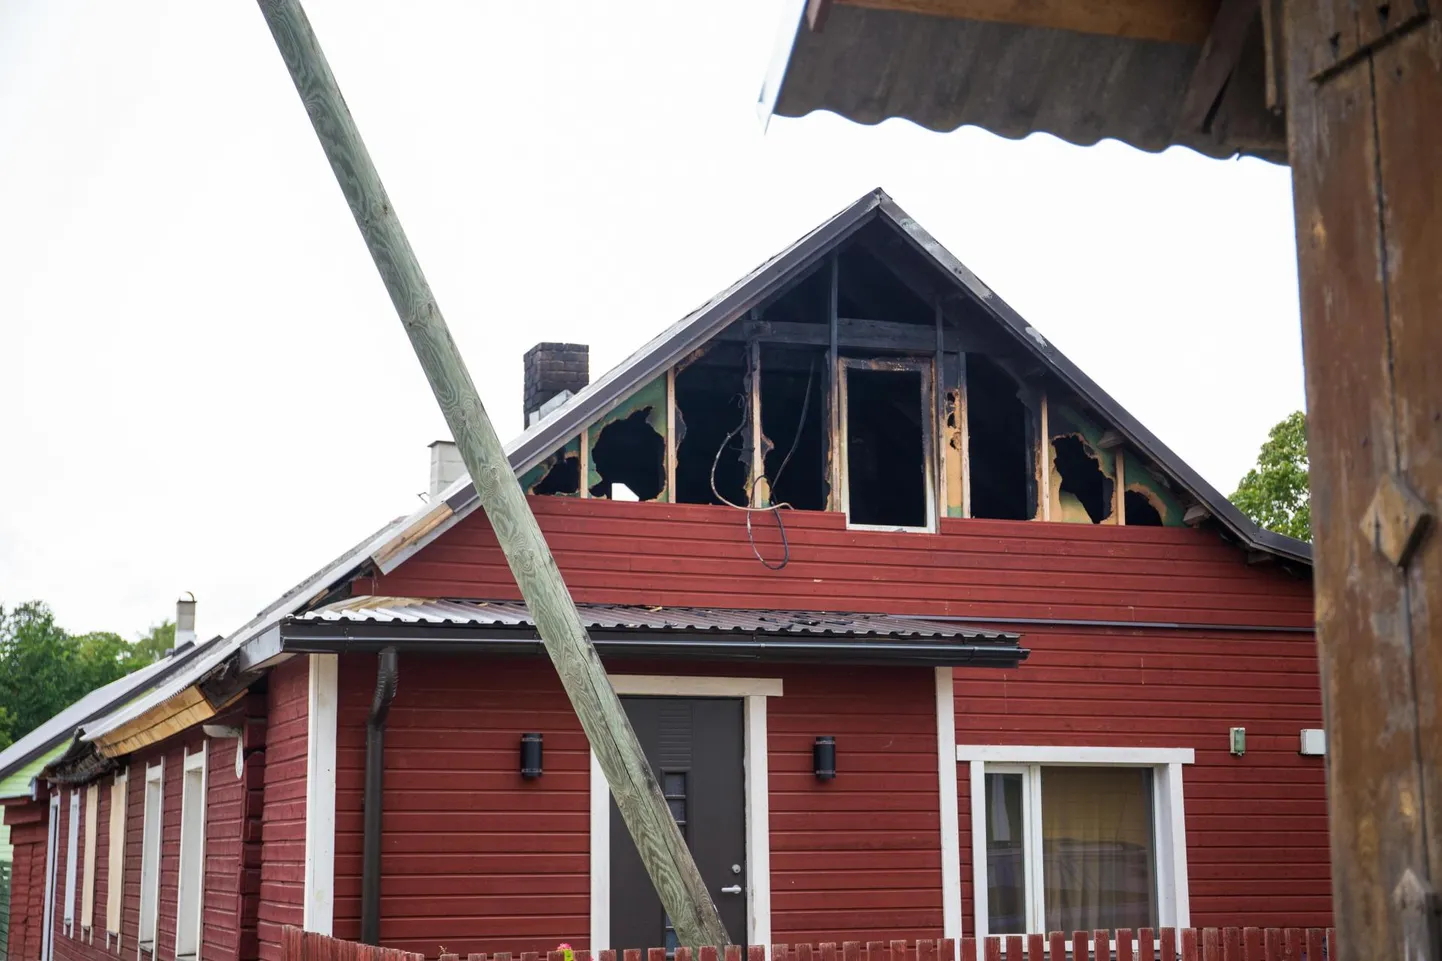 Tulekahjus hävis peaaegu täielikult katusekonstruktsioon ja hoone vahekoridor.